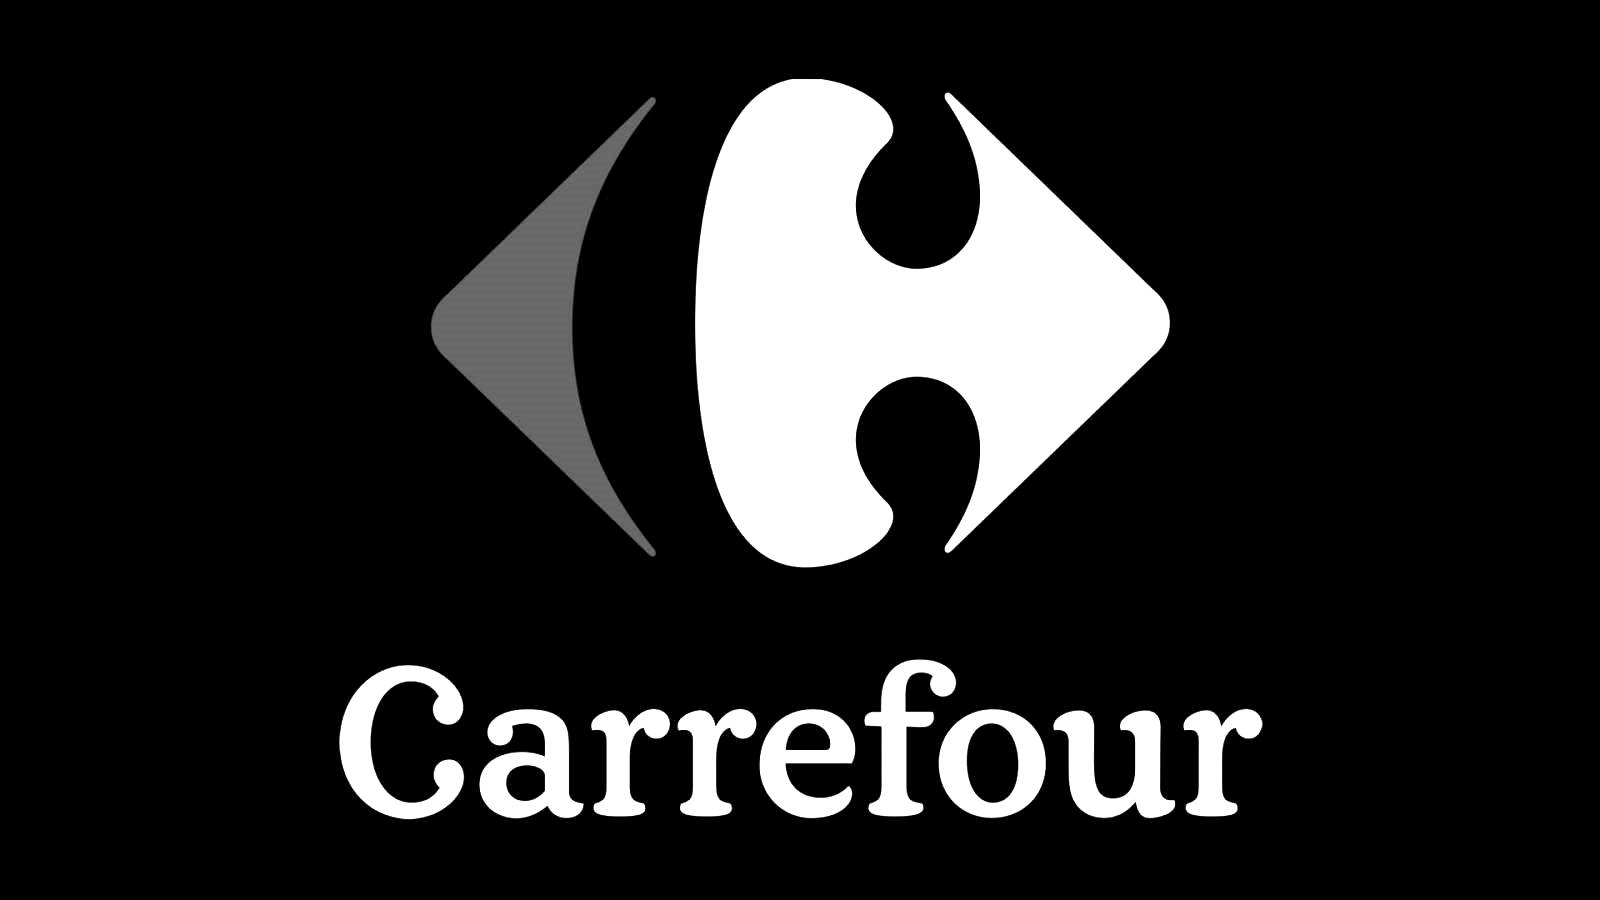 Carrefour BLACK FRIDAY Vitvaror Sänkt HALVT pris